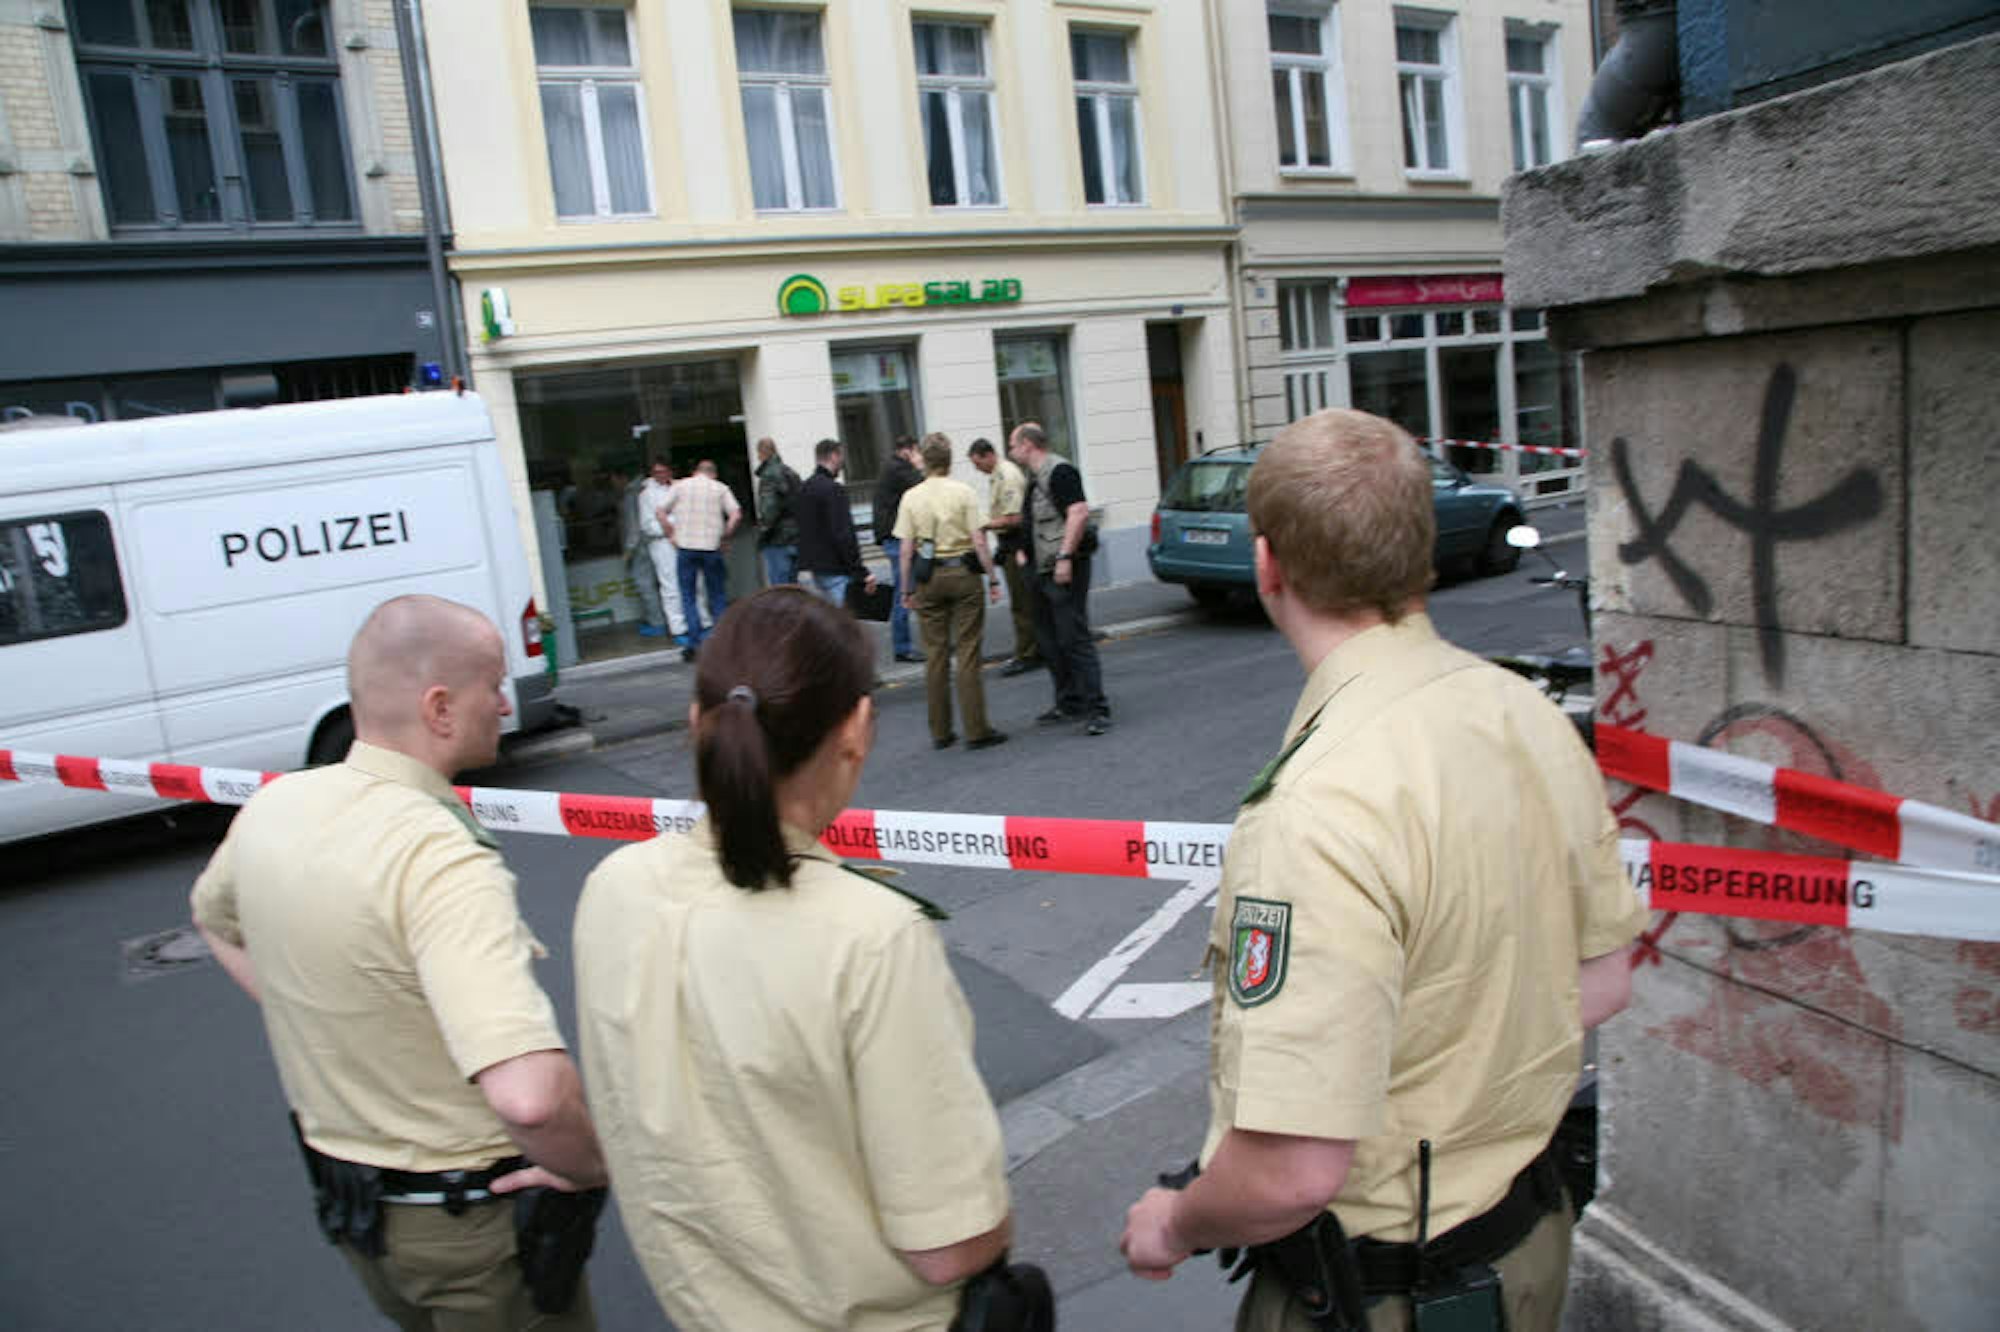 Juli 2007, Gertrudenstraße in Köln: Nach einem Leichenfund in der Salatbar „Supasalad“ hat die Polizei den Tatort abgesperrt, um ungestört arbeiten zu können. Anwohner, Passanten oder Journalisten haben keinen Zugang.